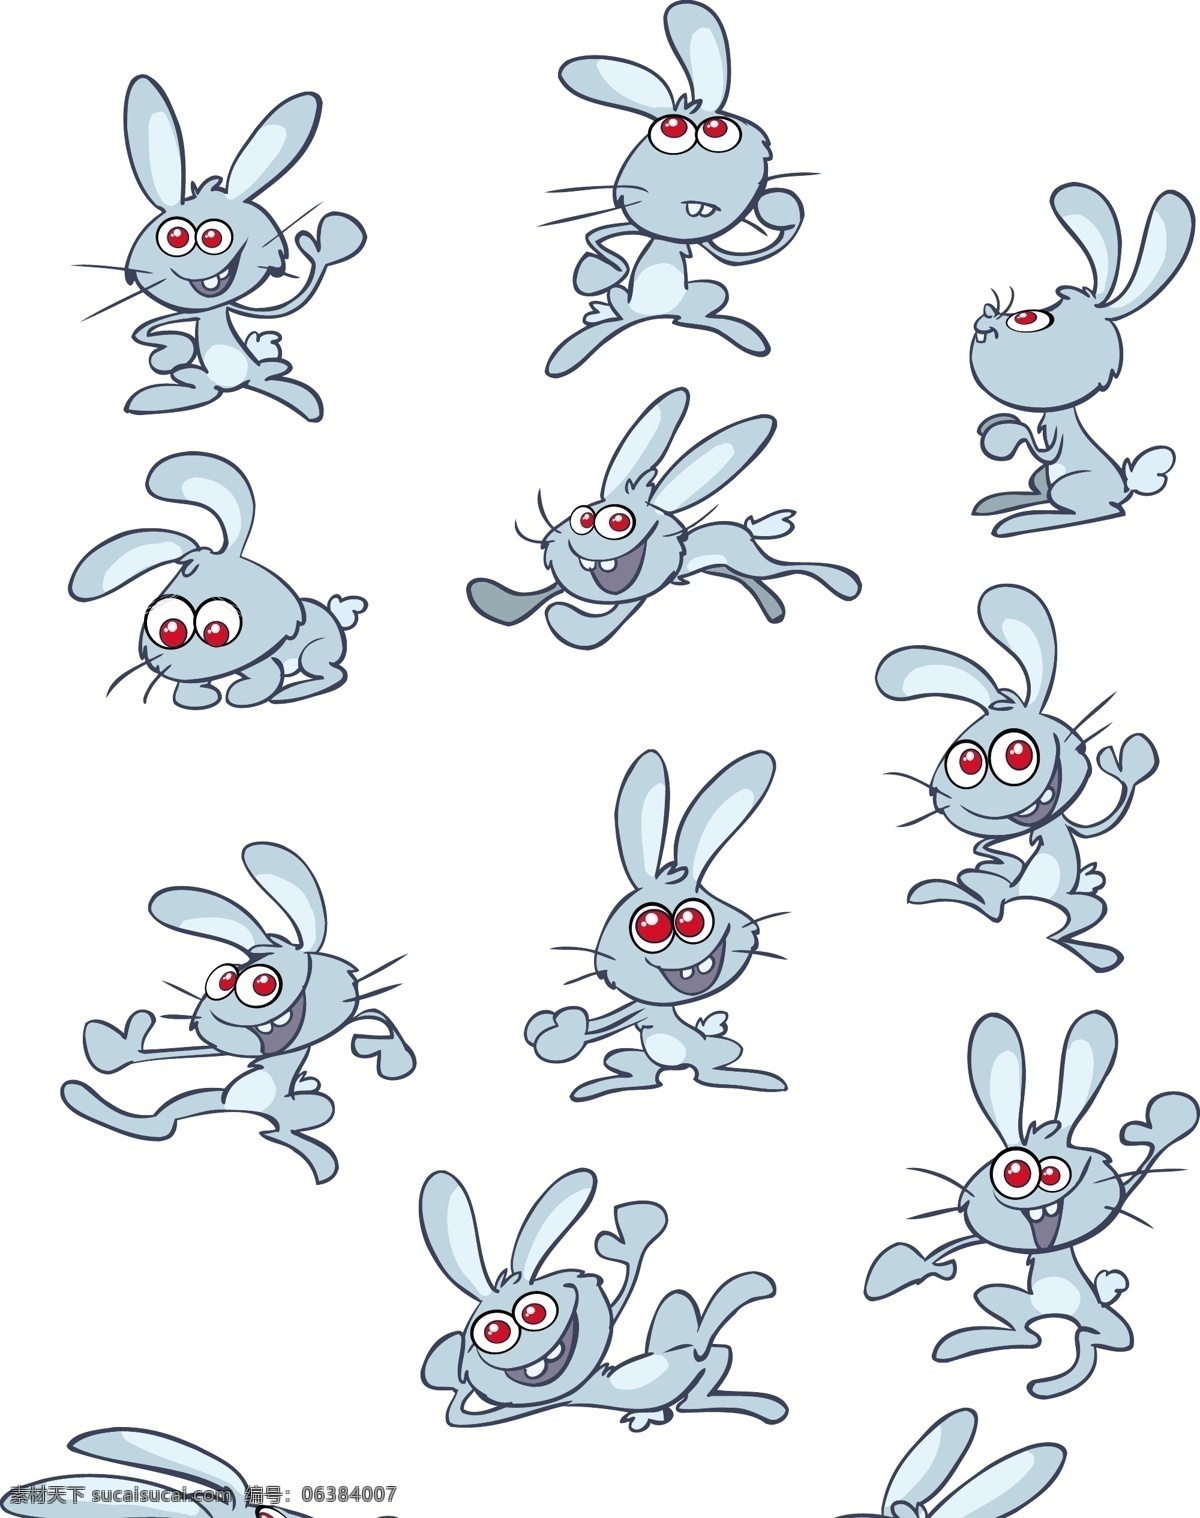 可爱 的卡 通 小 兔子 矢量 奔跑 卡通 矢量素材 兔 小白兔 小兔子 大耳朵 伊面 矢量图 其他矢量图